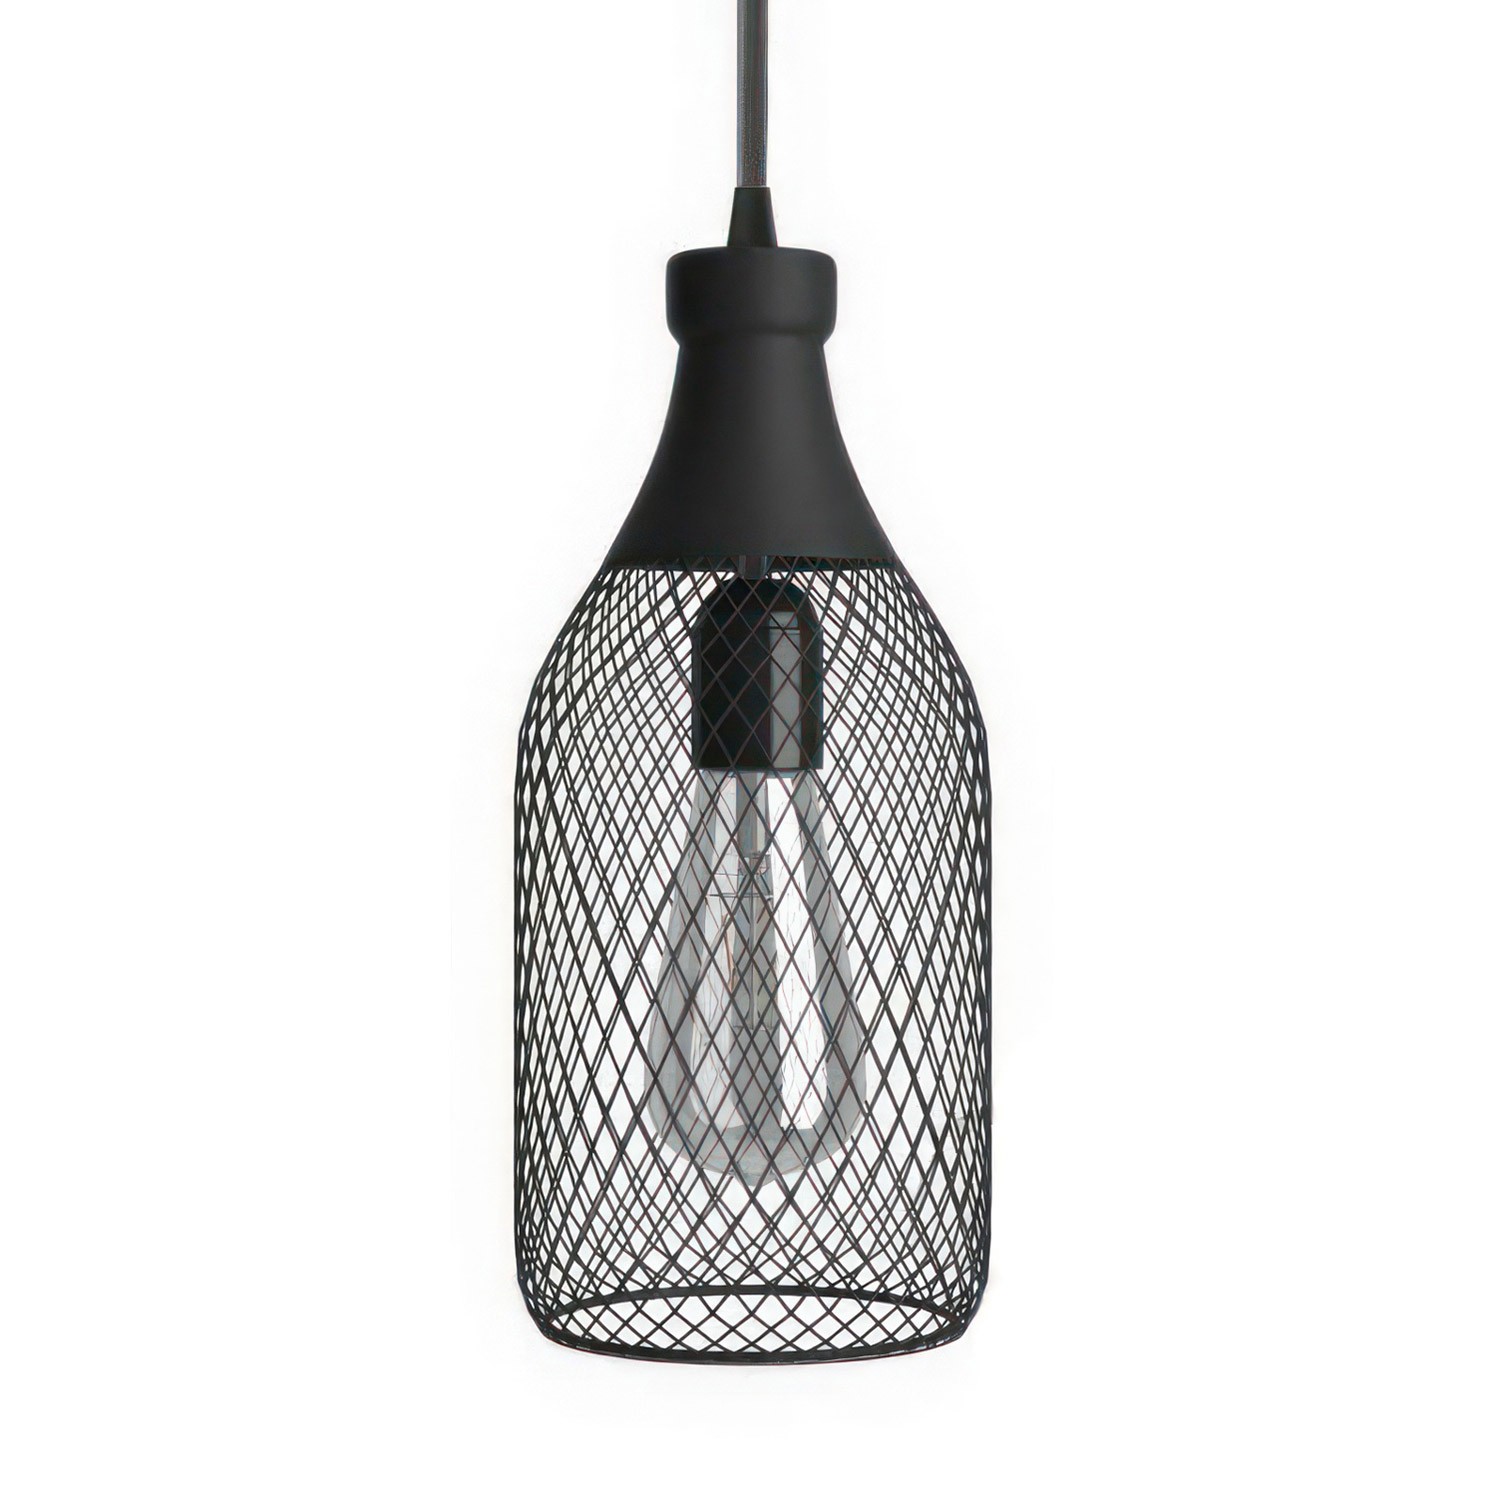 Lámpara colgante hecha en Italia con cable textil, pantalla botella Jeroboam con detalles metálicos